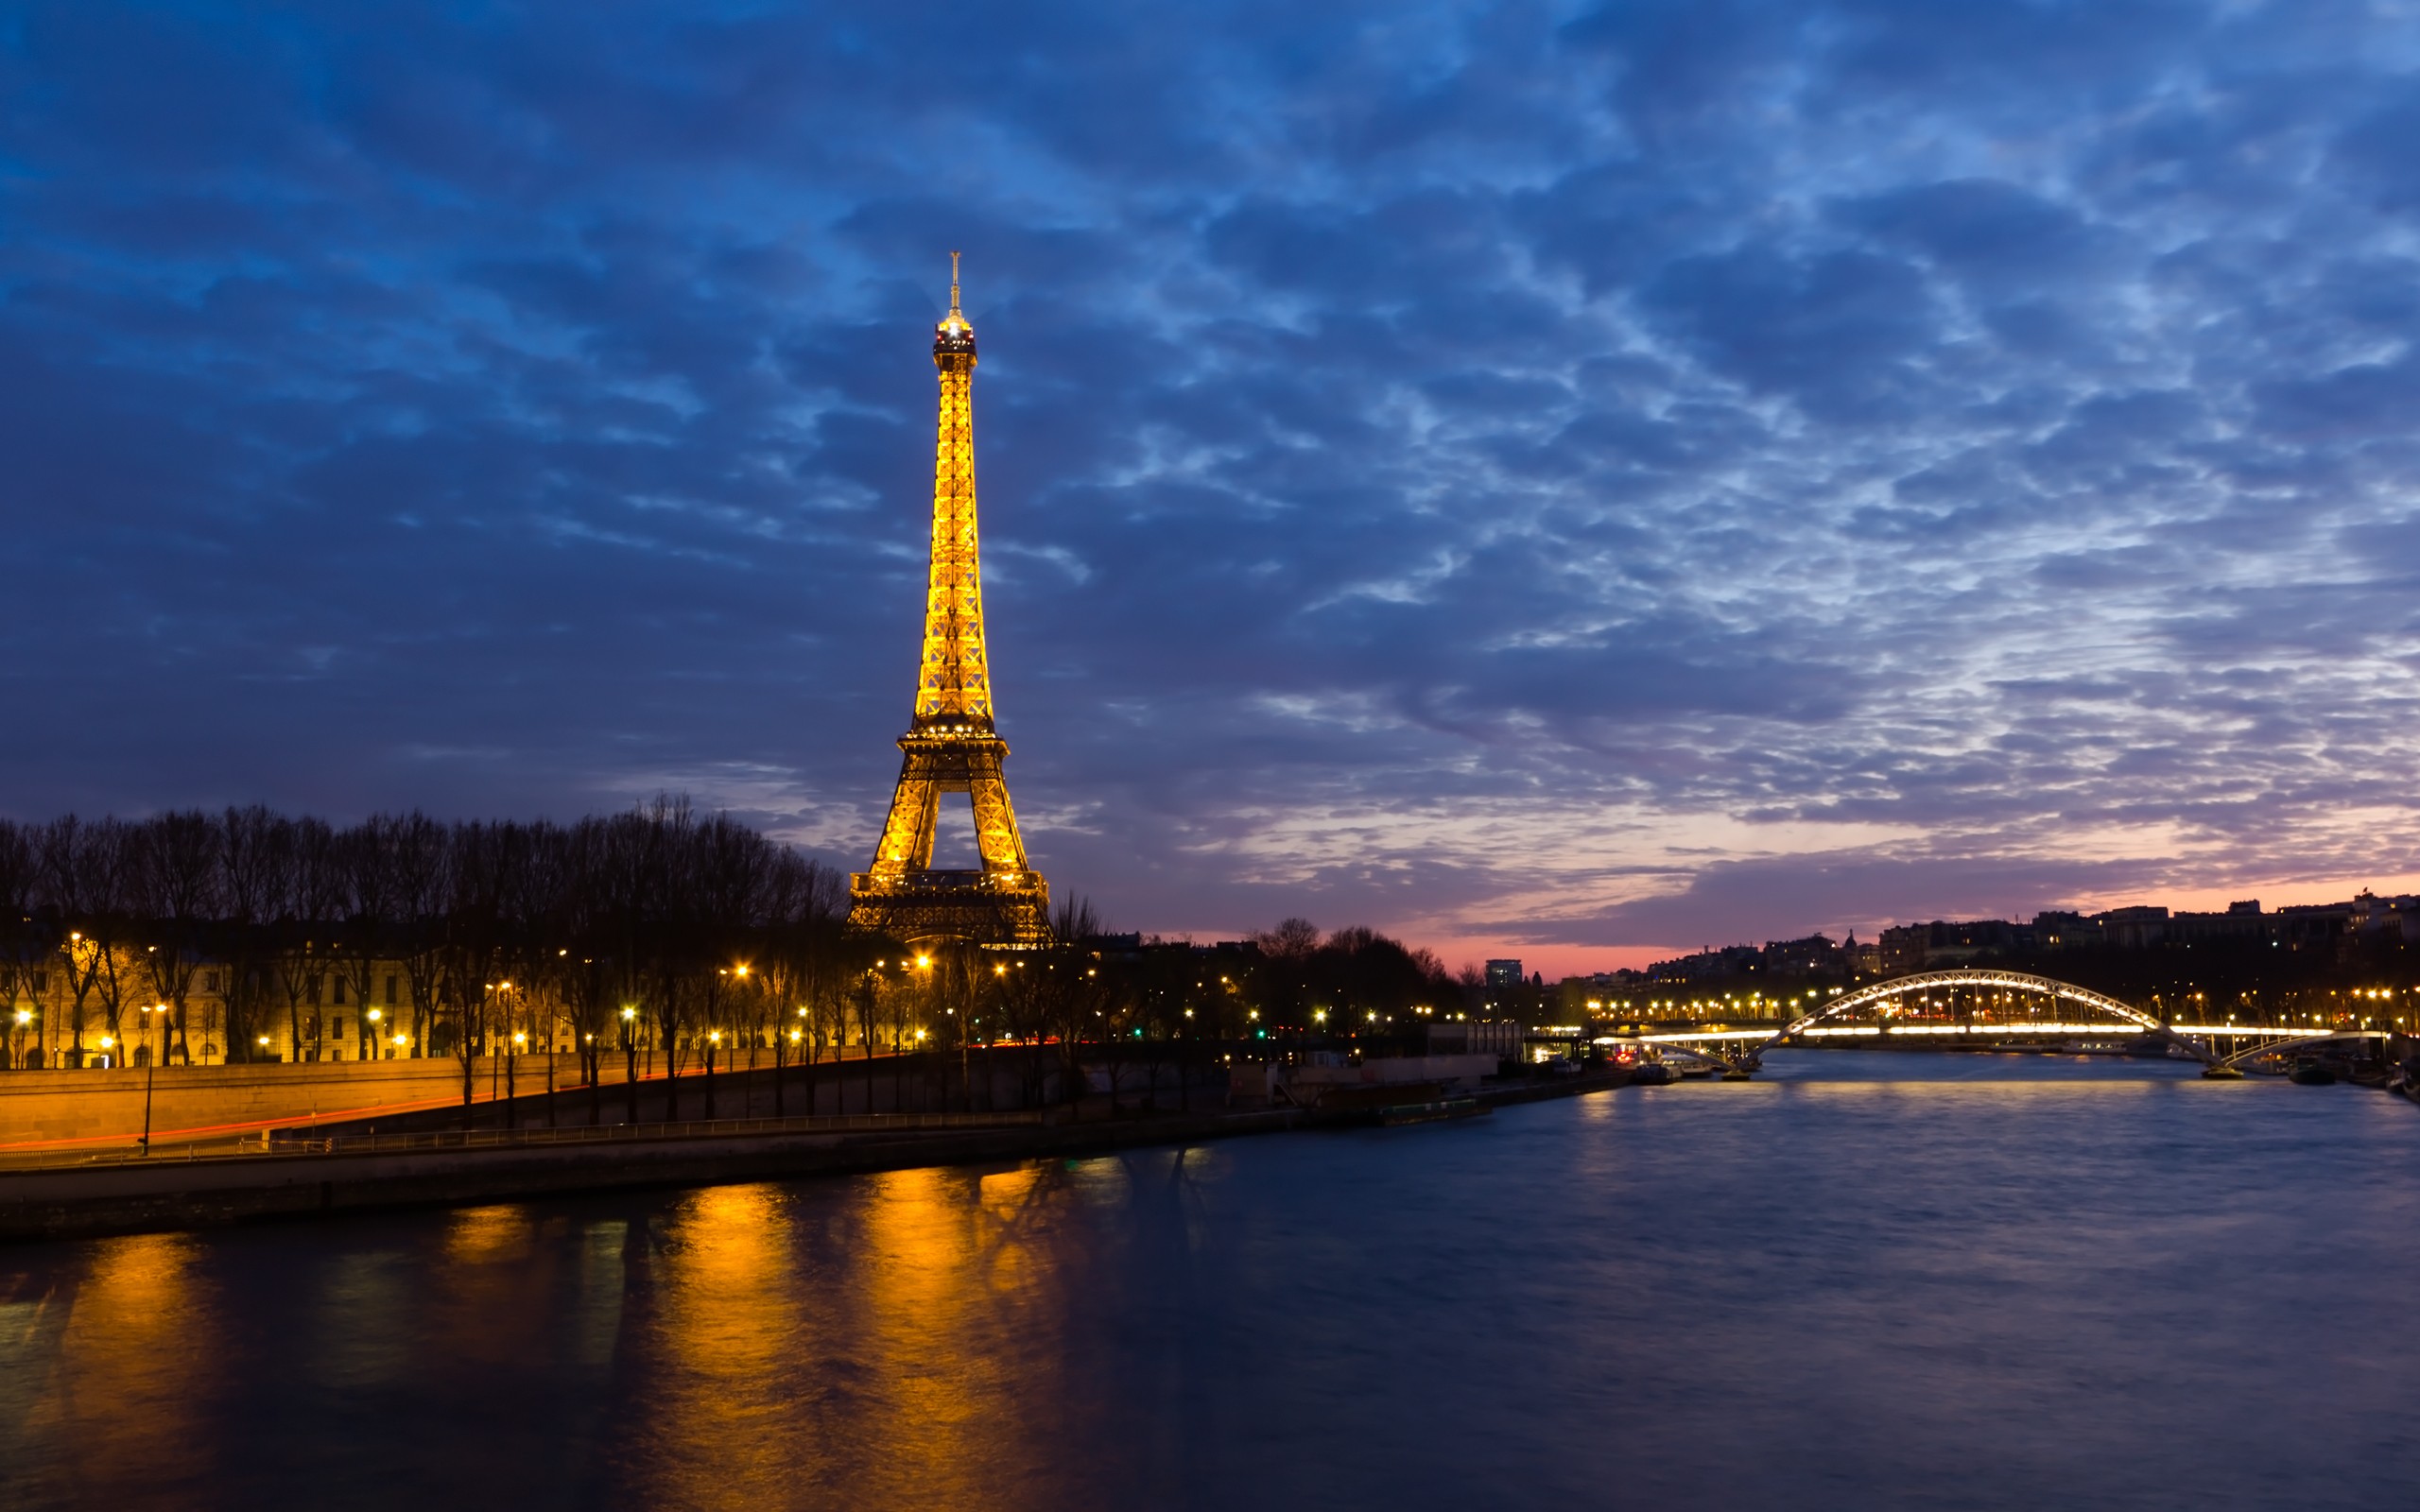 Eiffel Tower, Paris - desktop wallpaper